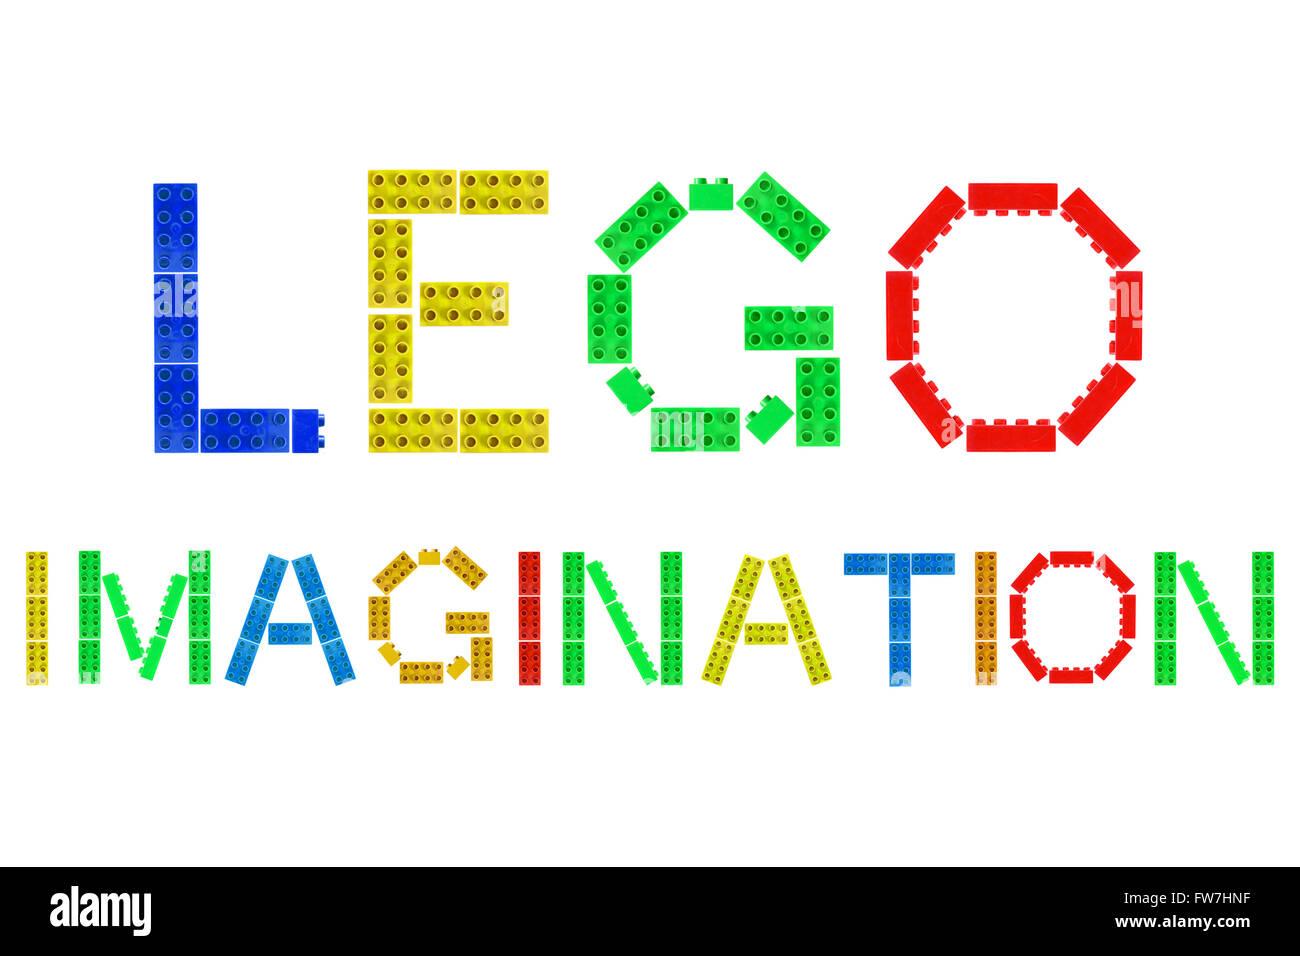 Imagination Lego créé à partir de morceaux de Lego photographié sur un fond blanc. Banque D'Images